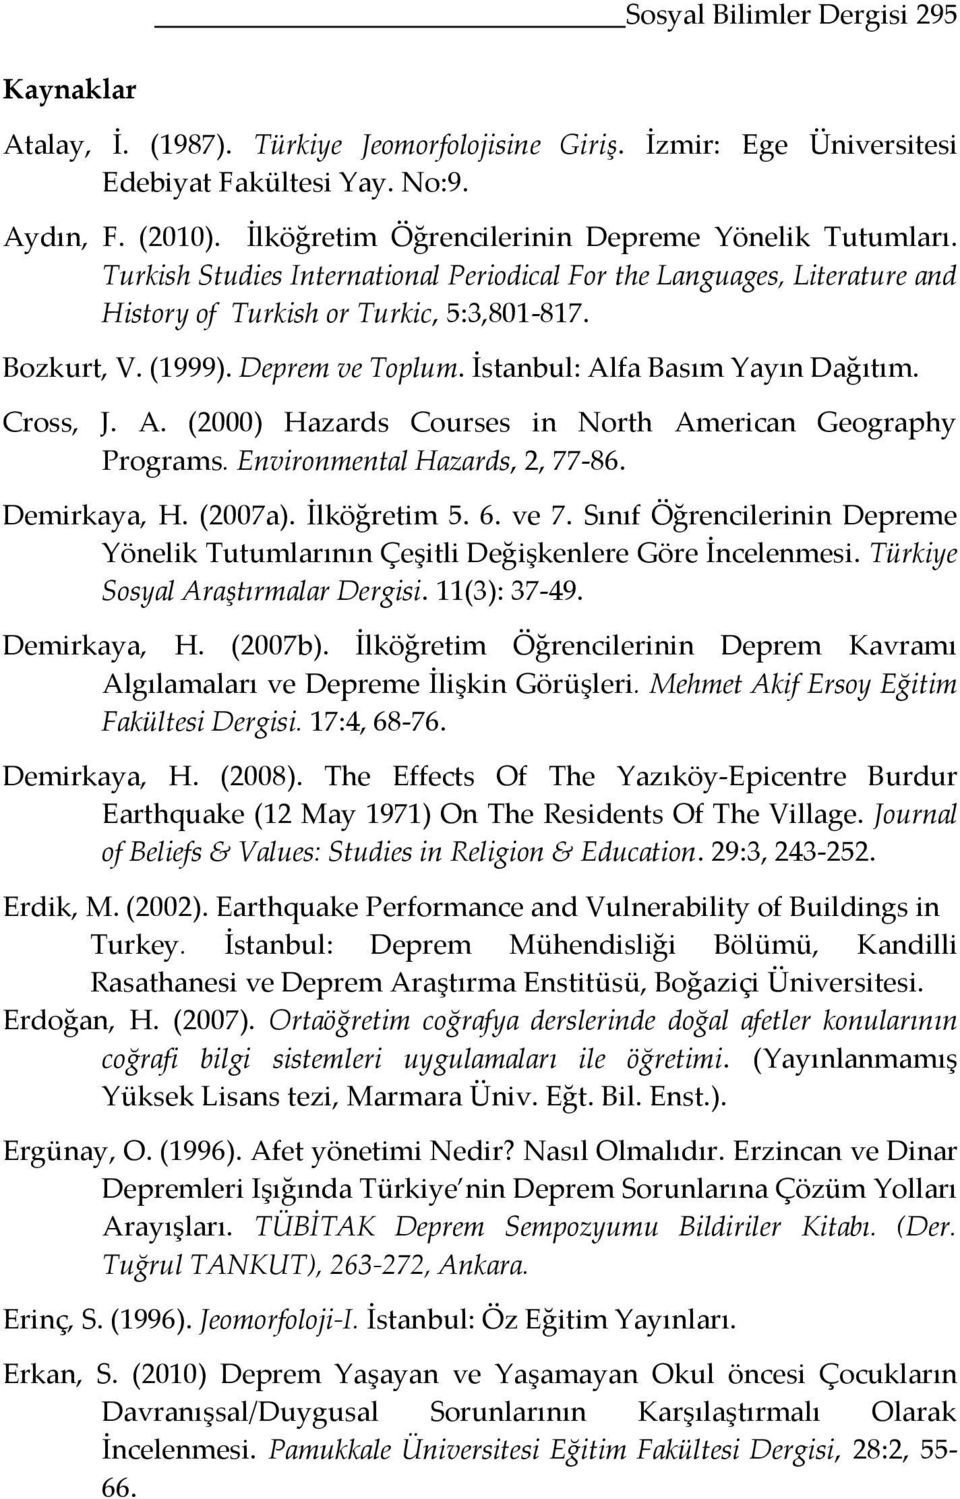 Deprem ve Toplum. İstanbul: Alfa Basım Yayın Dağıtım. Cross, J. A. (2000) Hazards Courses in North American Geography Programs. Environmental Hazards, 2, 77-86. Demirkaya, H. (2007a). İlköğretim 5. 6.